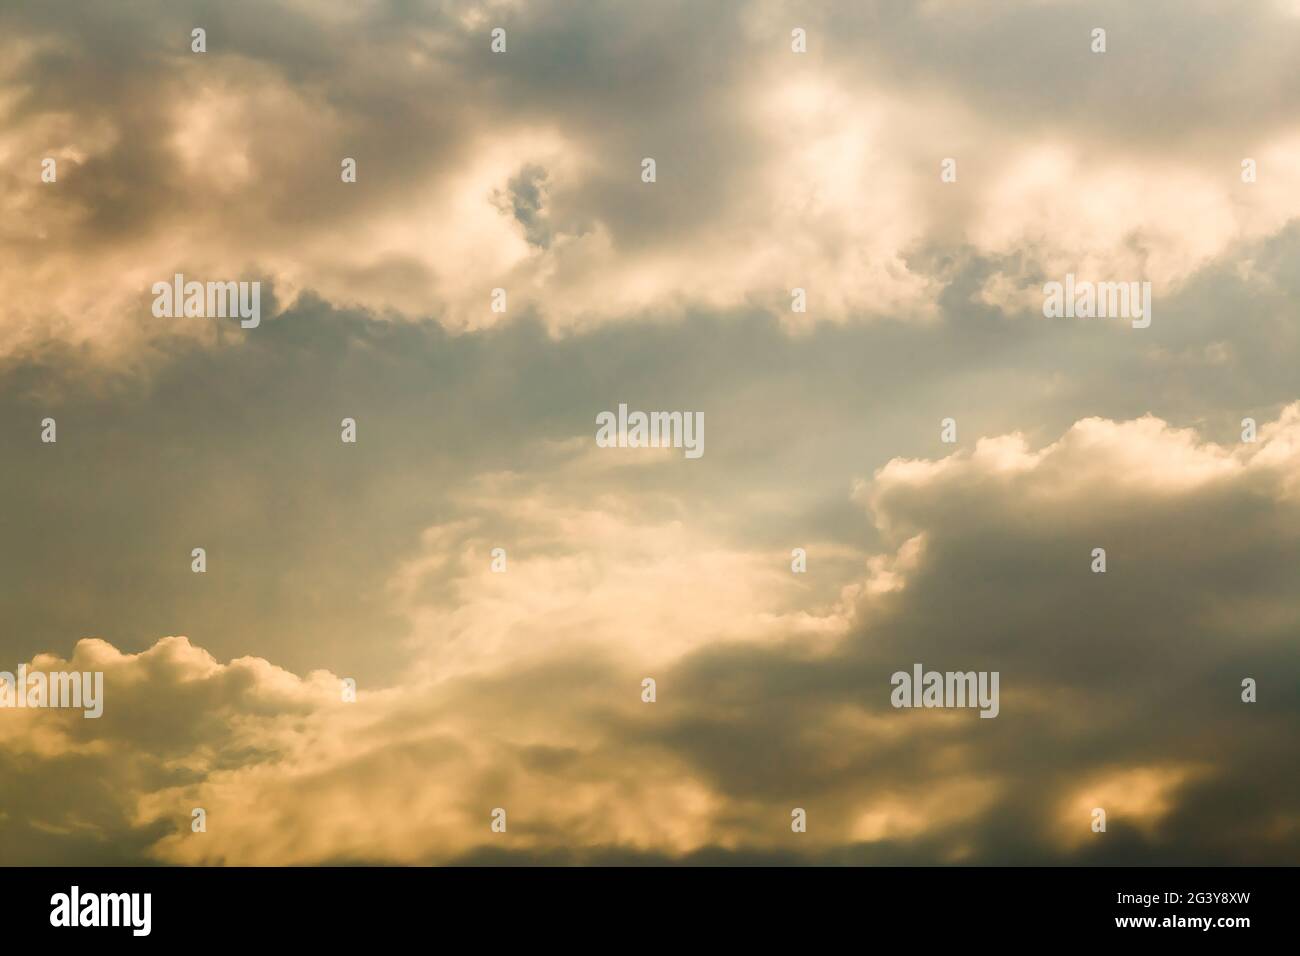 Schöner Abendhimmel mit goldenen Wolken. Himmelspanorama für Bildschirmschoner, Postkarten, Kalender, Präsentationen. Tiefer Punkt bei Weitwinkel. Warme Frühlings- oder Sommerabende. Stockfoto